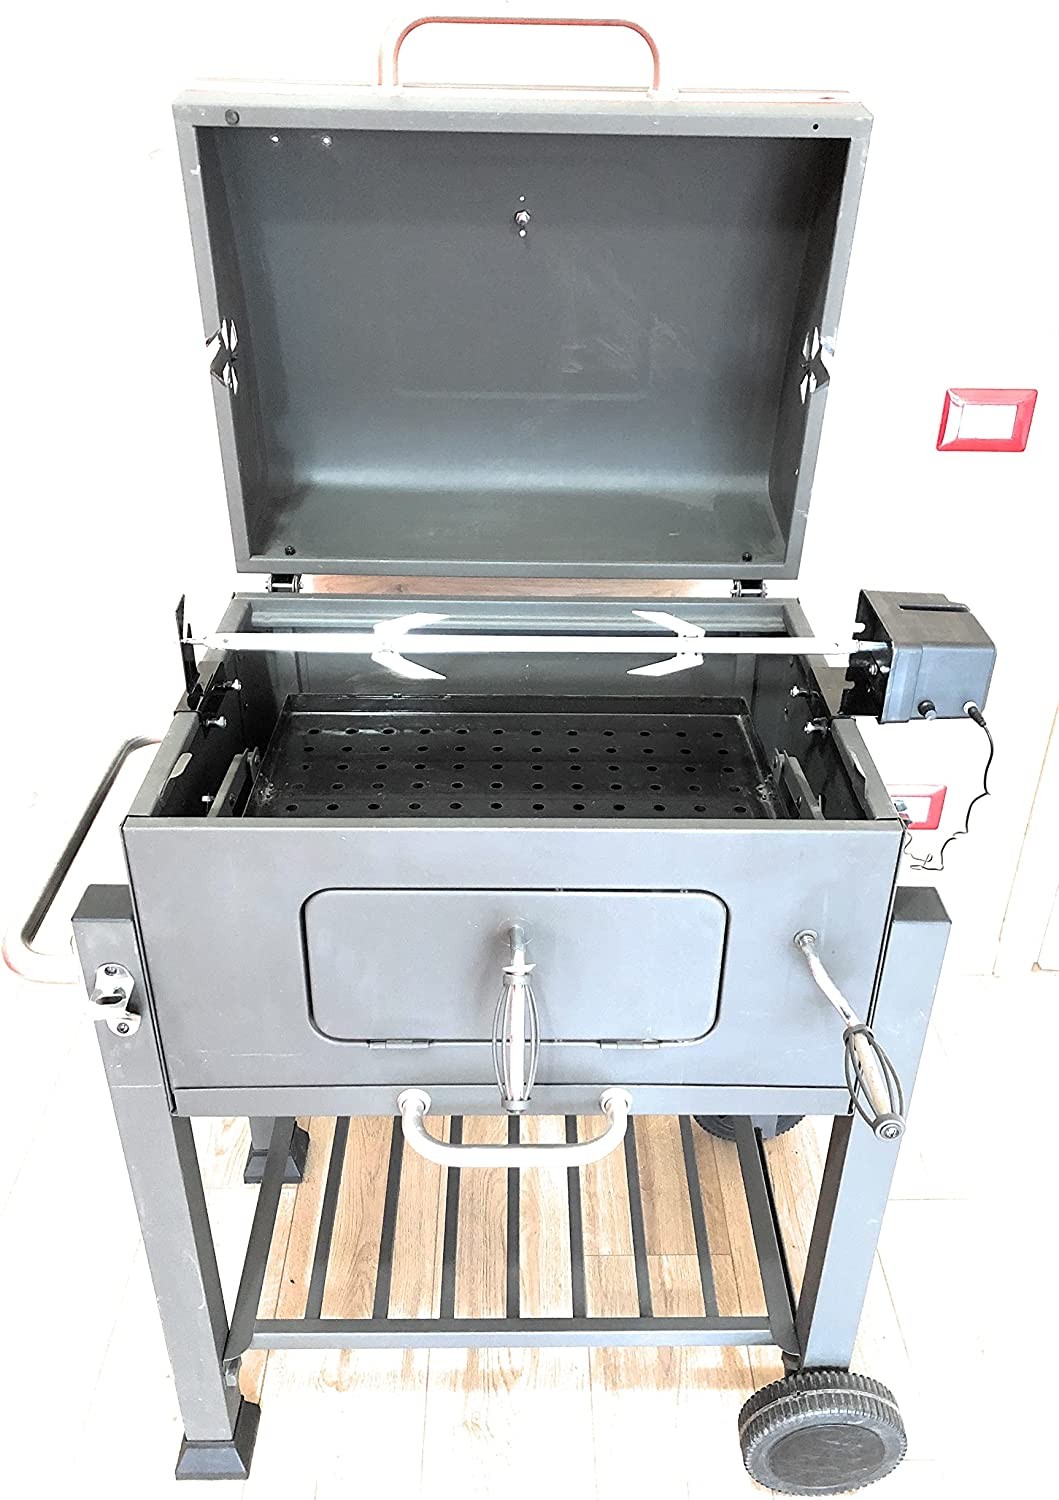 Girarrosto S K i R O N ® per barbecue tepro alimentazione usb e regolazione  velocita' di rotazione portata kg 15 - Allegri Girarrosti